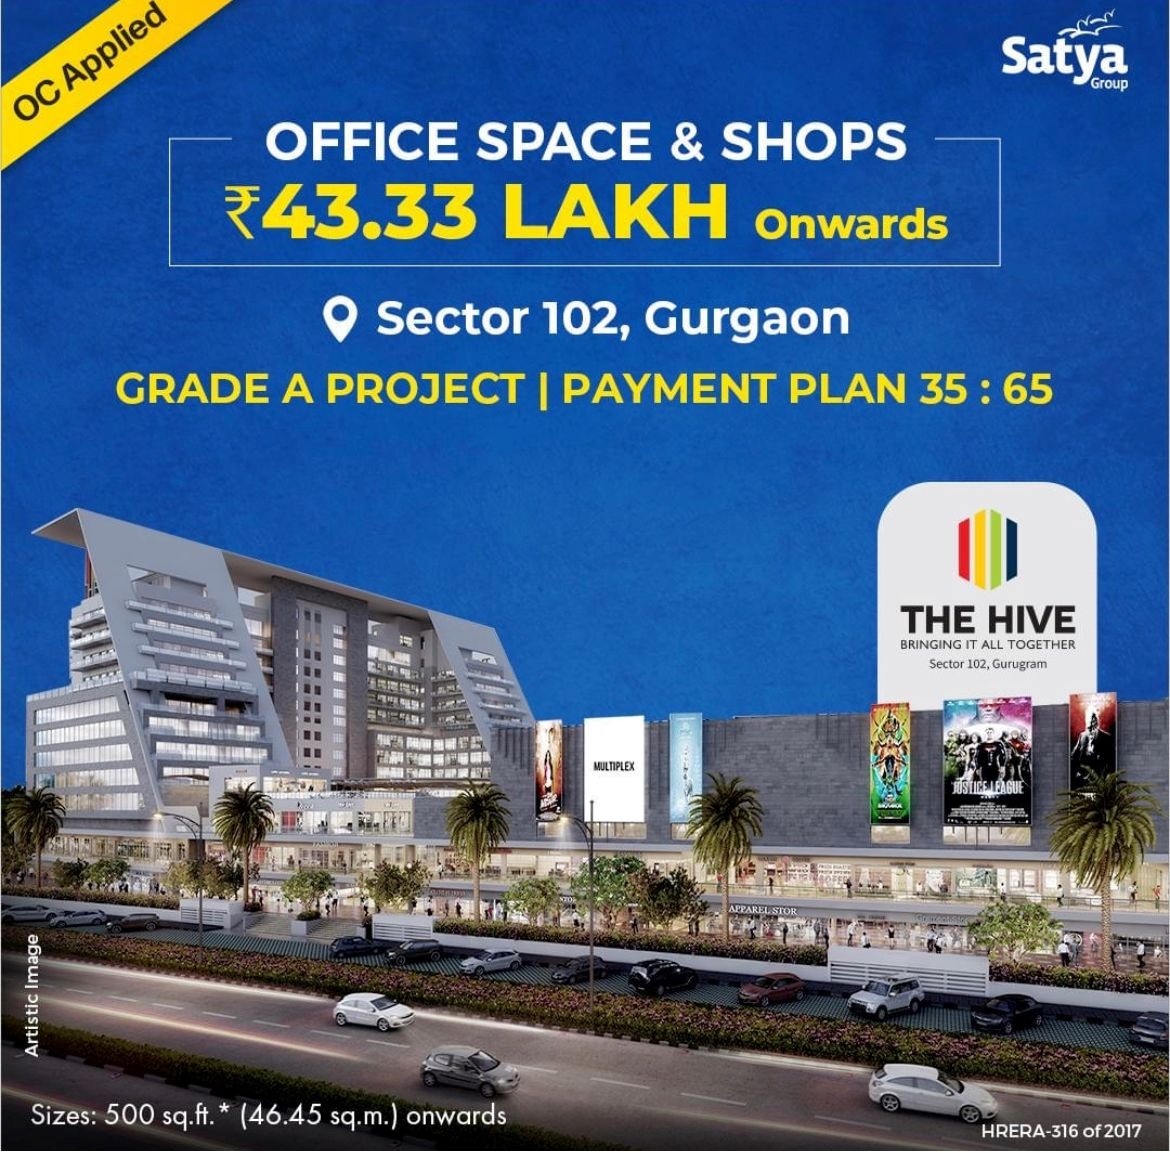 Presenting 35:65 payment plan at Satya The Hive, Gurgaon